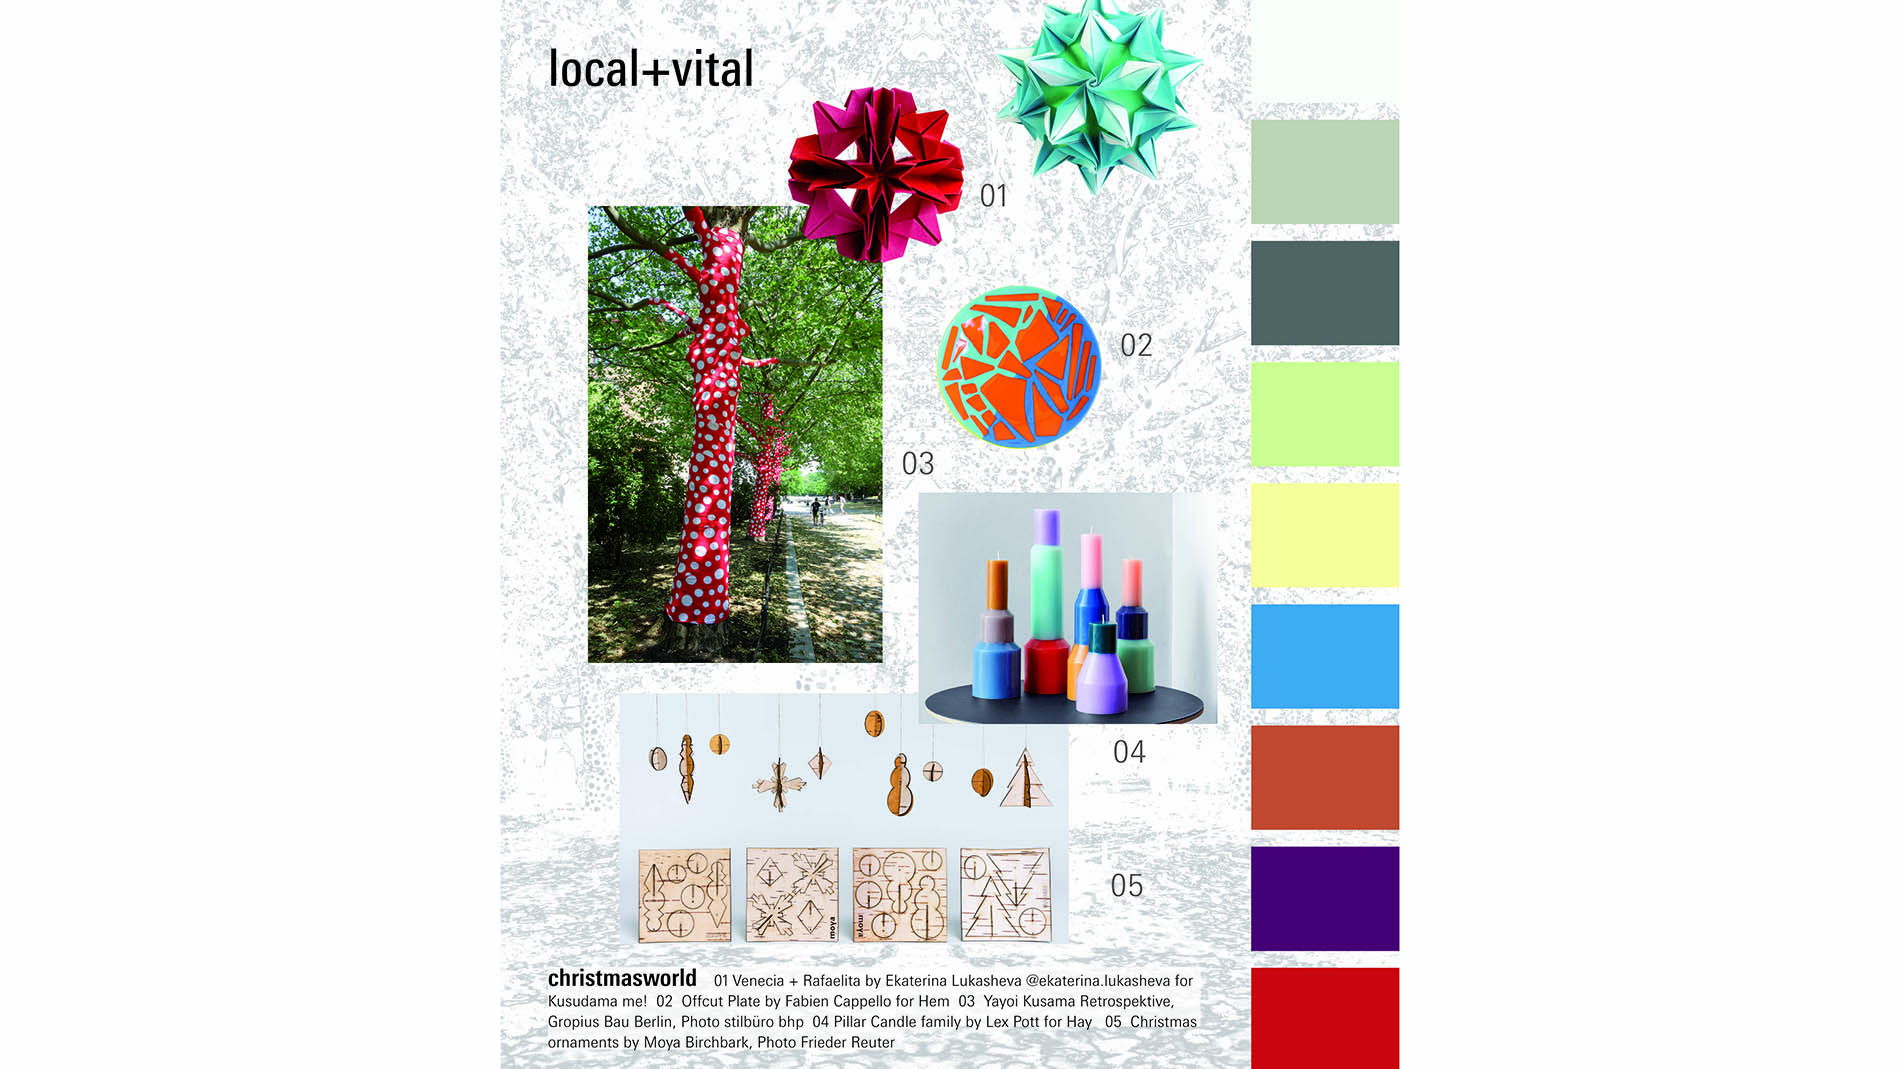 „local+vital“ bringt Fröhlichkeit durch plakative Farben und lokale Produkte.